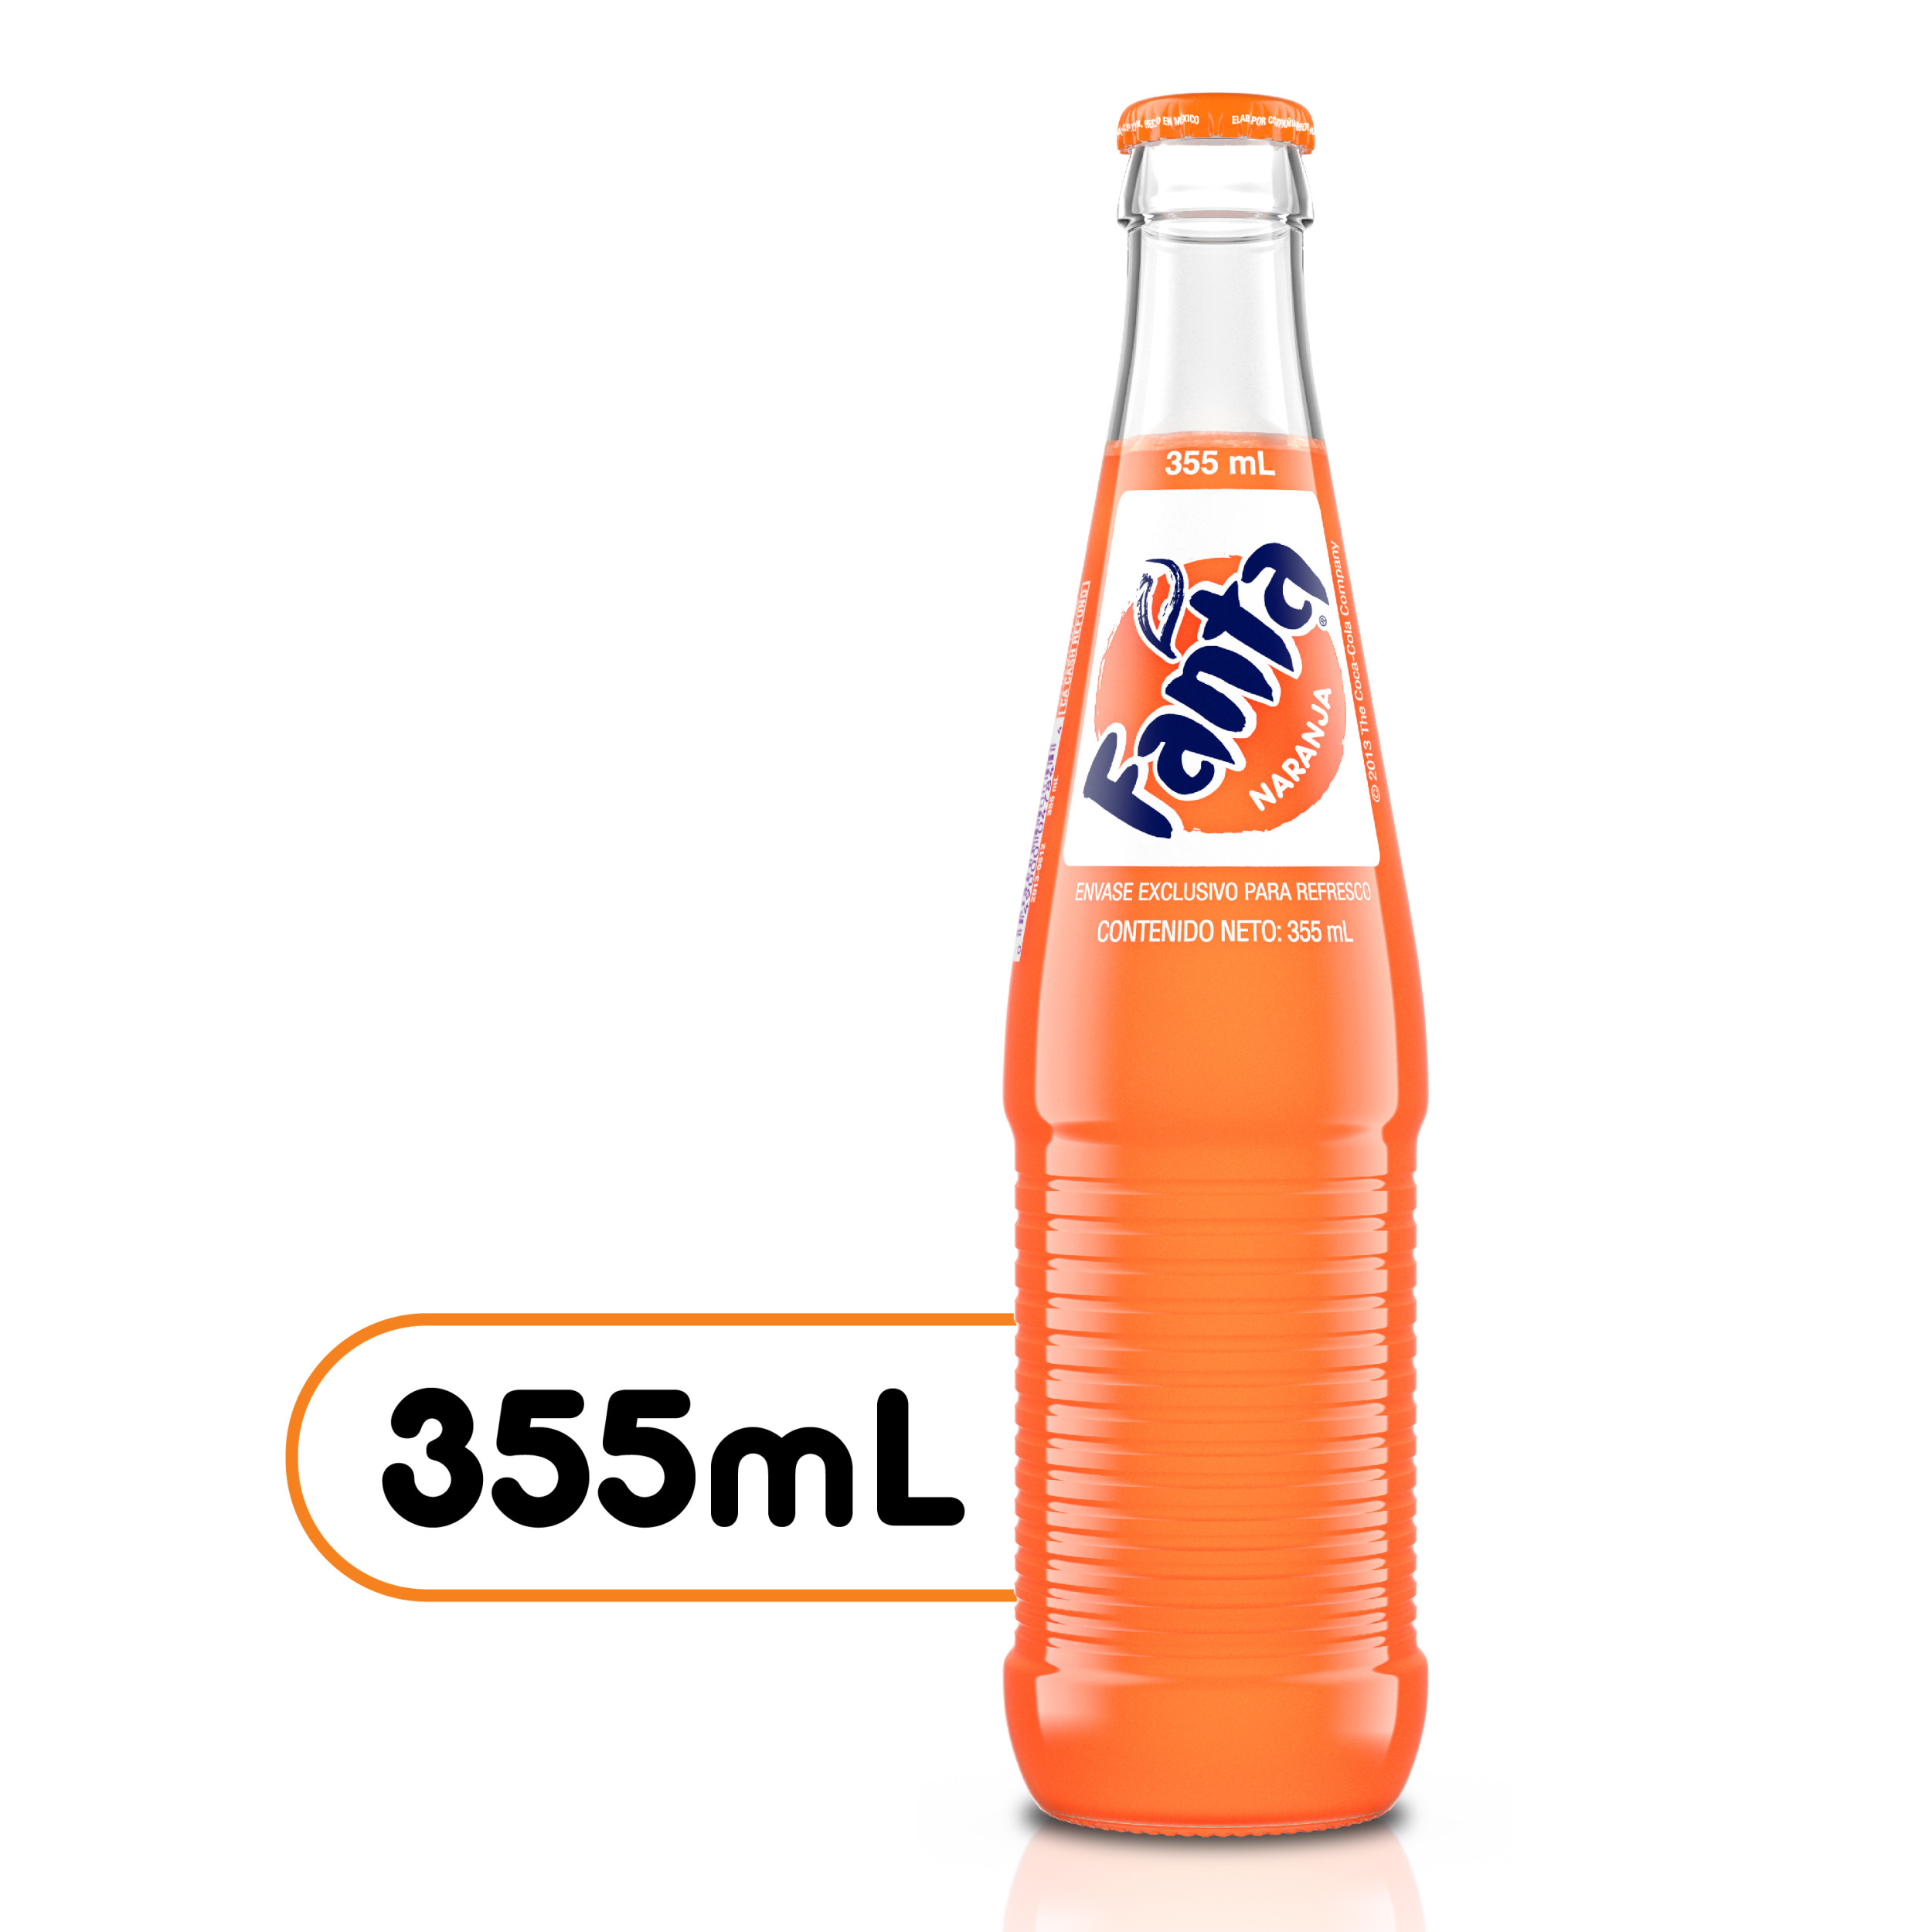 Fanta Orange Mexico Glass Bottles 355 Ml 24 Pack American Multi Brand Trading